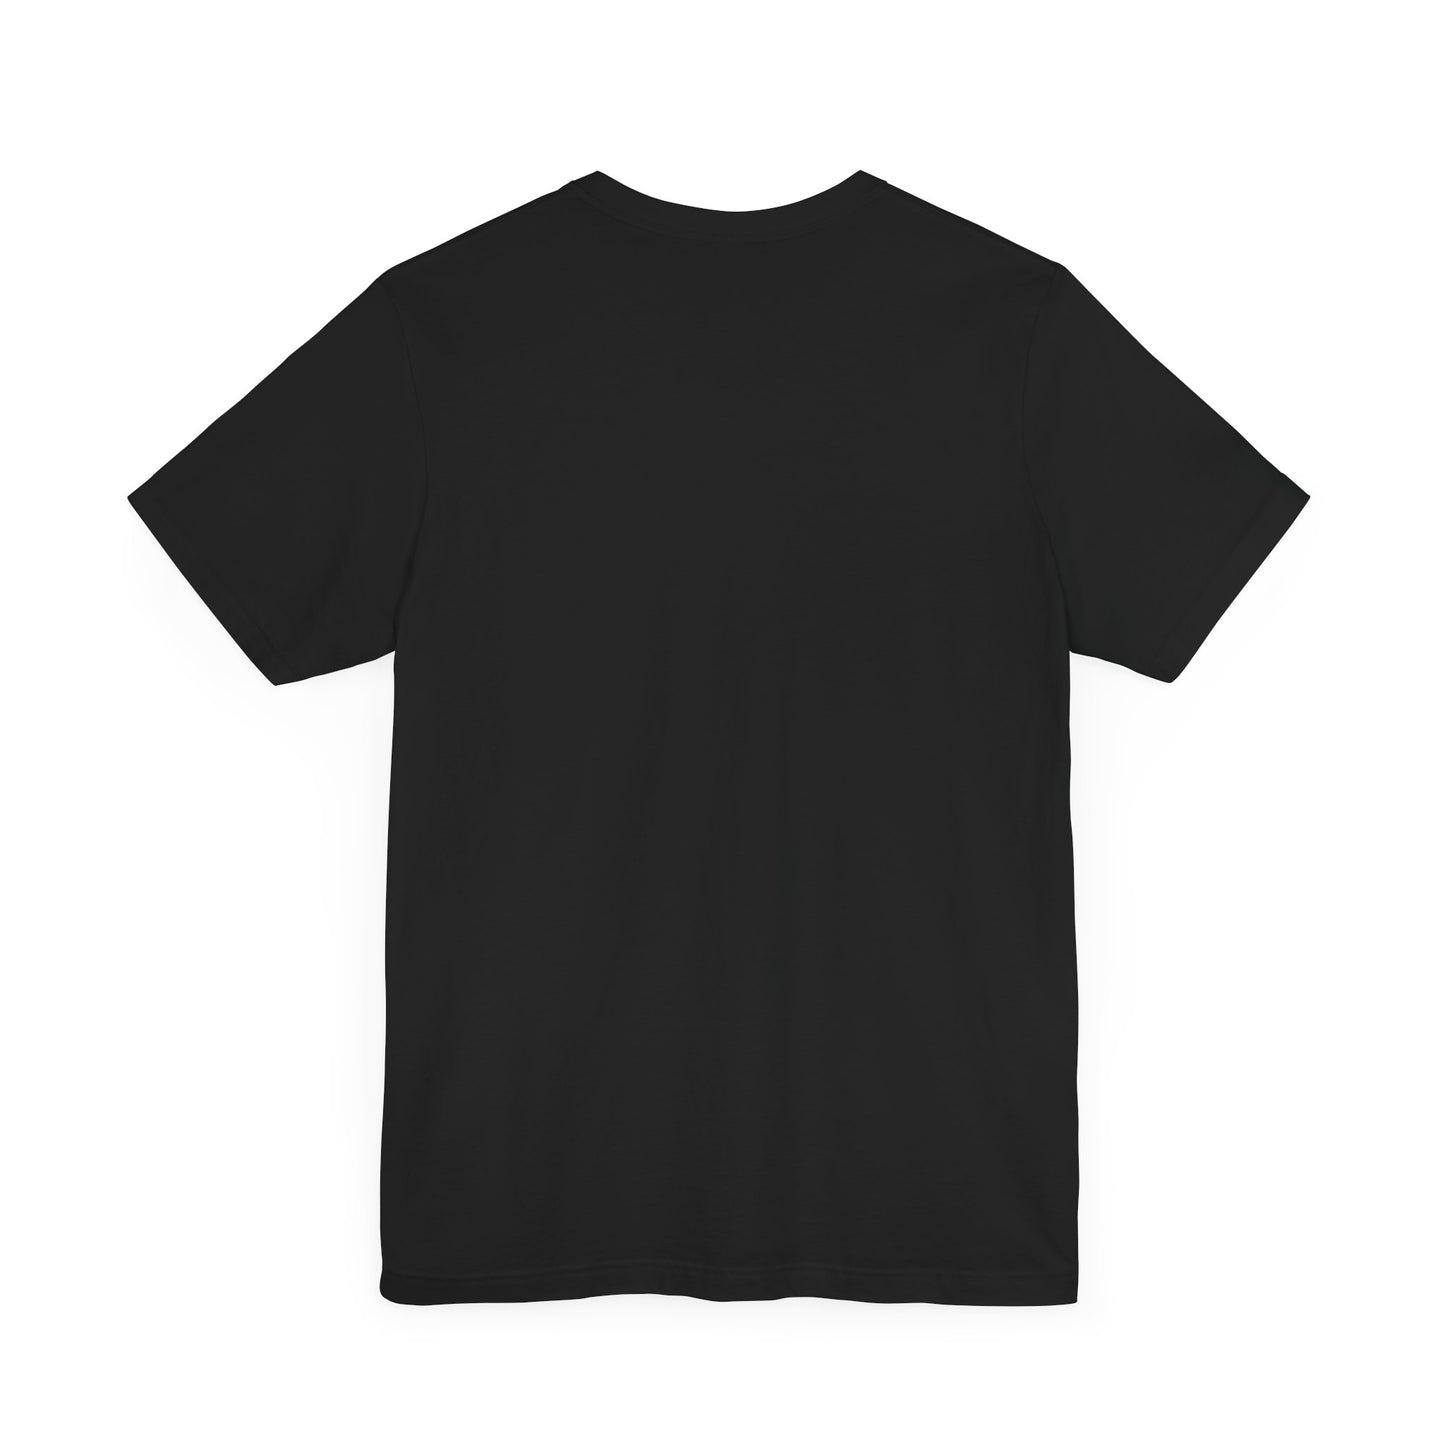 Spartan Fitness T-Shirt - Black